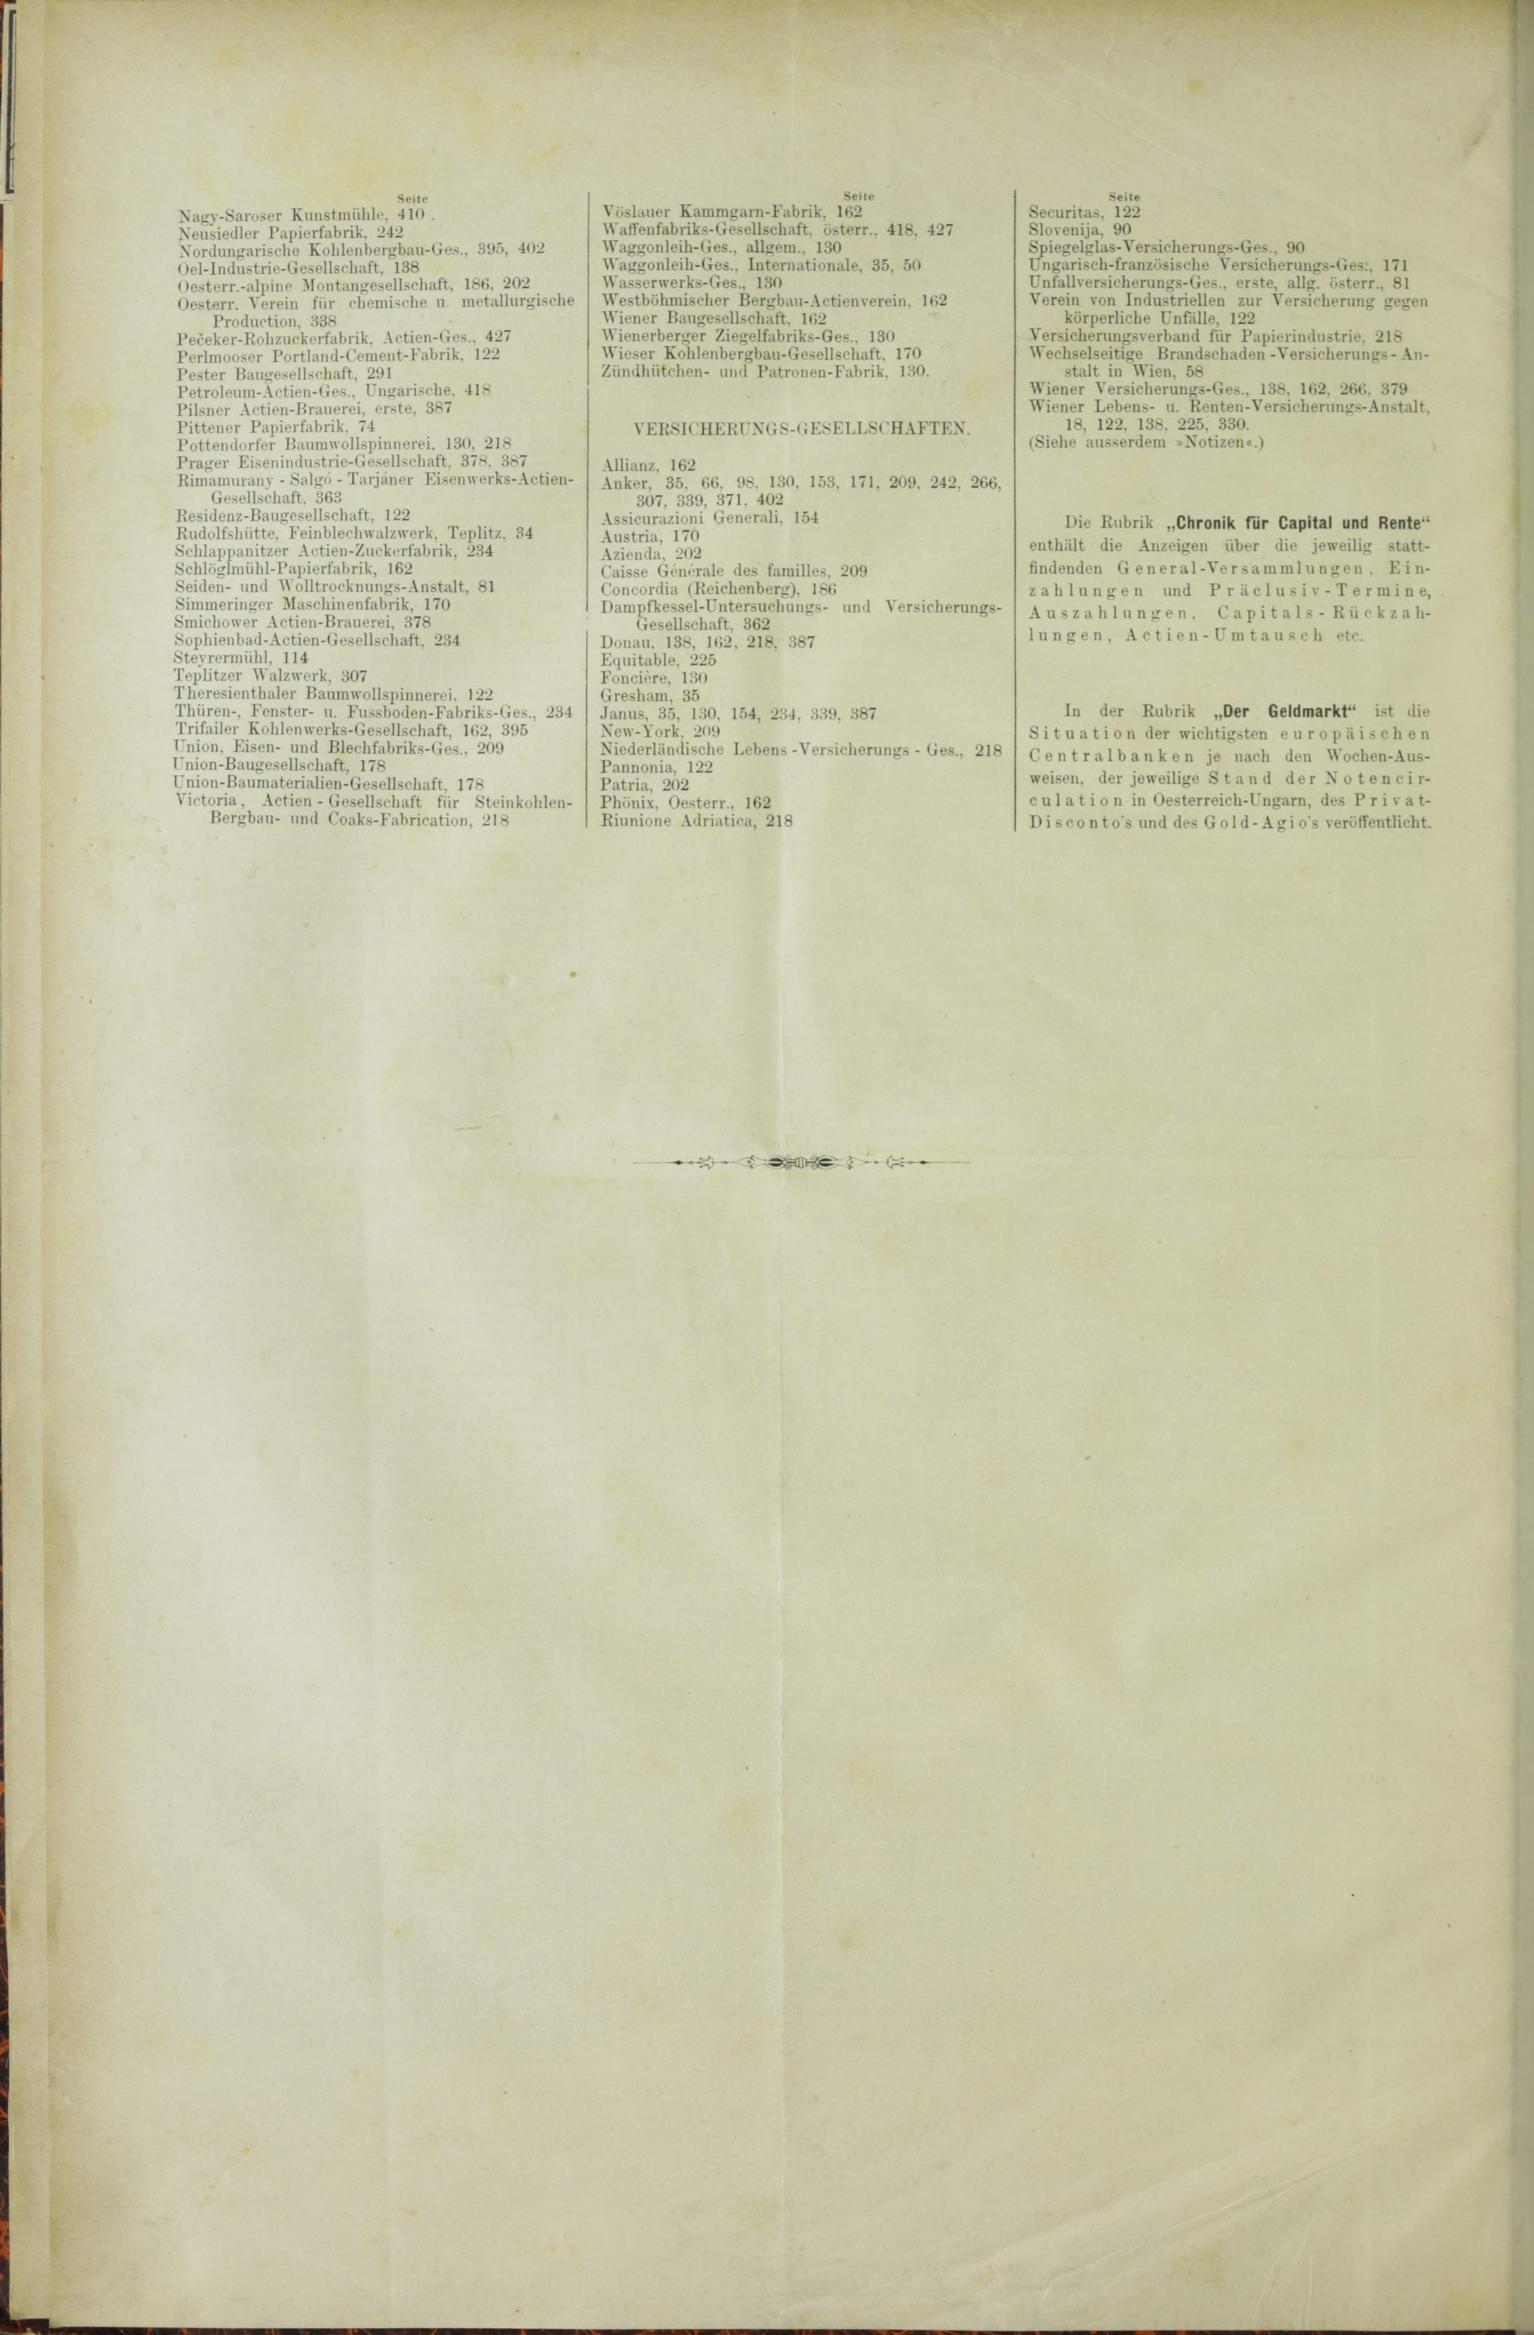 Der Tresor 16.07.1885 - Seite 12